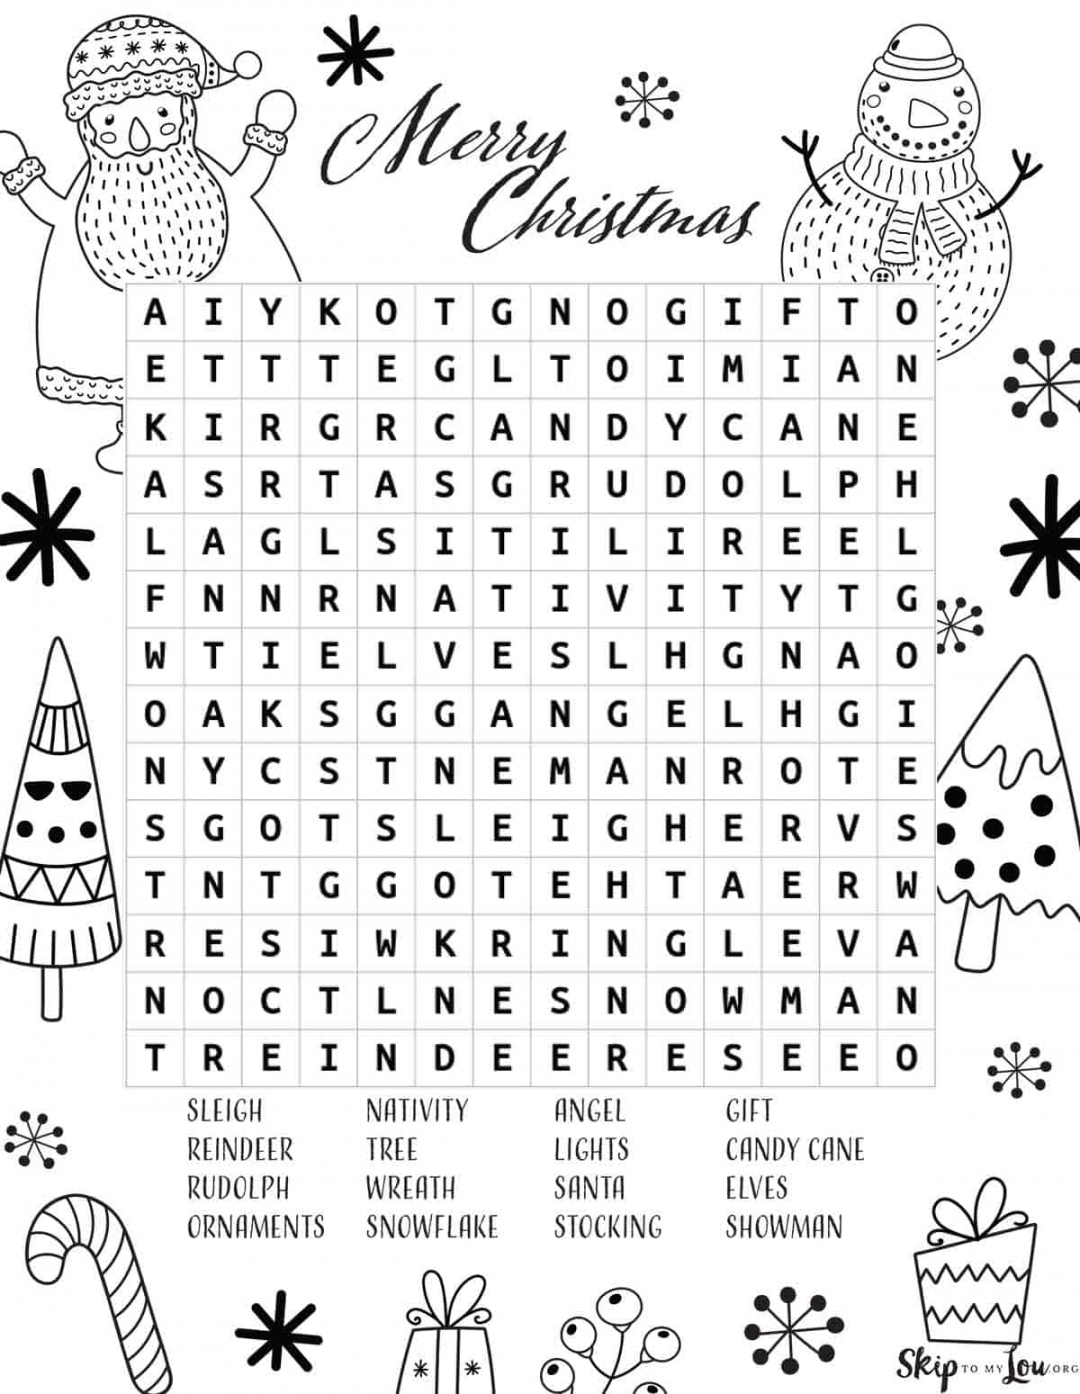 Free Christmas Word Search Printable - Printable - Christmas Word Search  Skip To My Lou